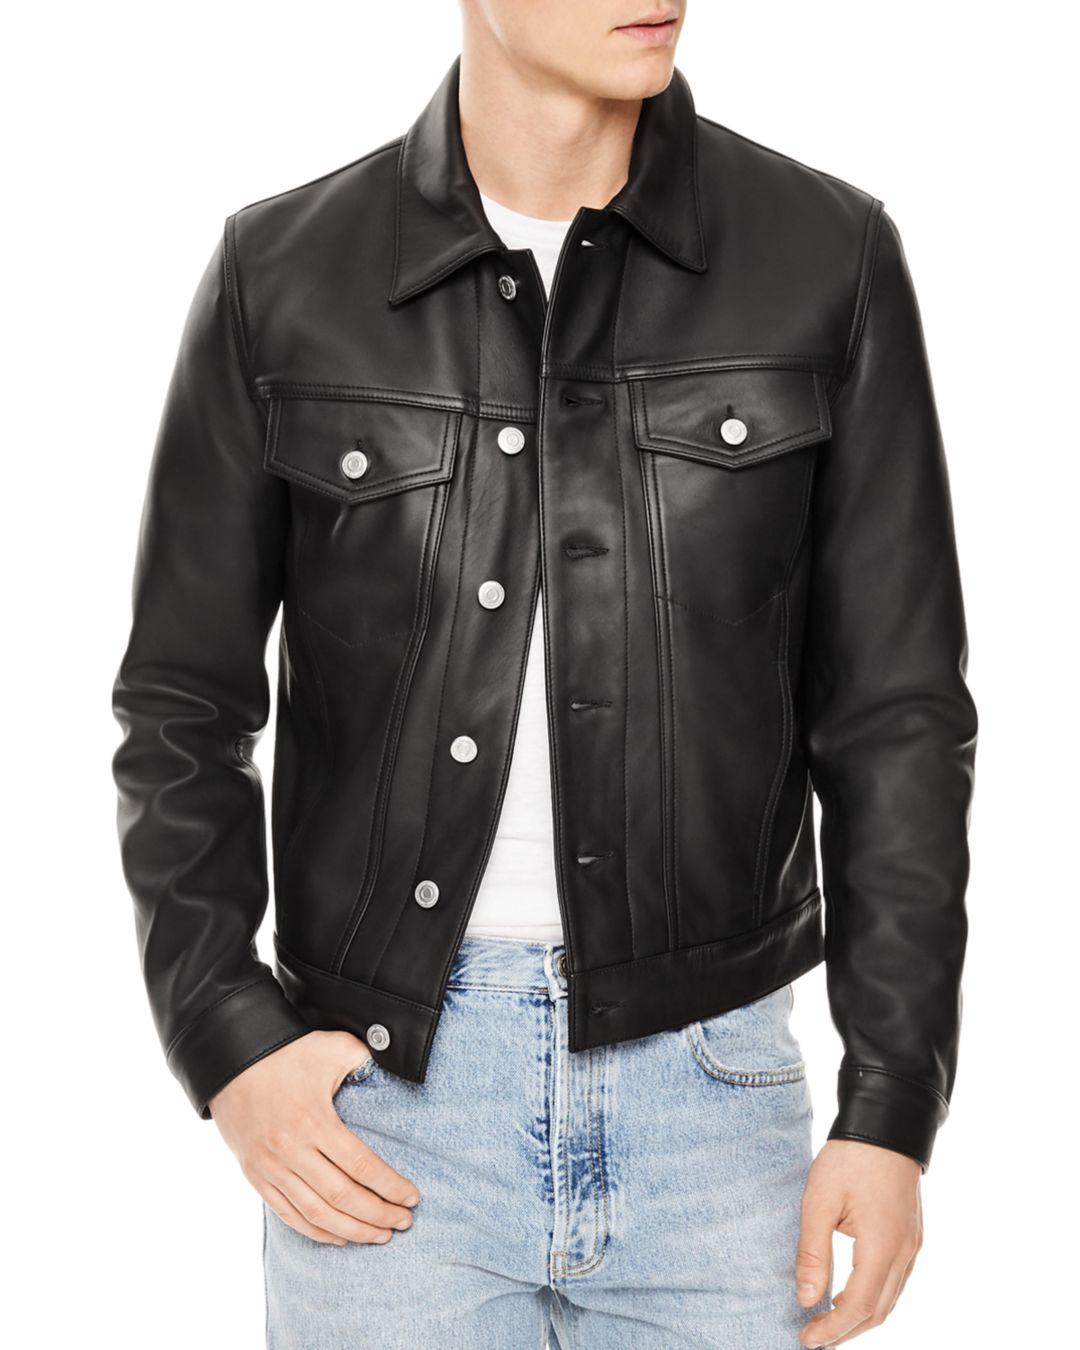 Sandro Trucker Leather Jacket in Black for Men - Lyst